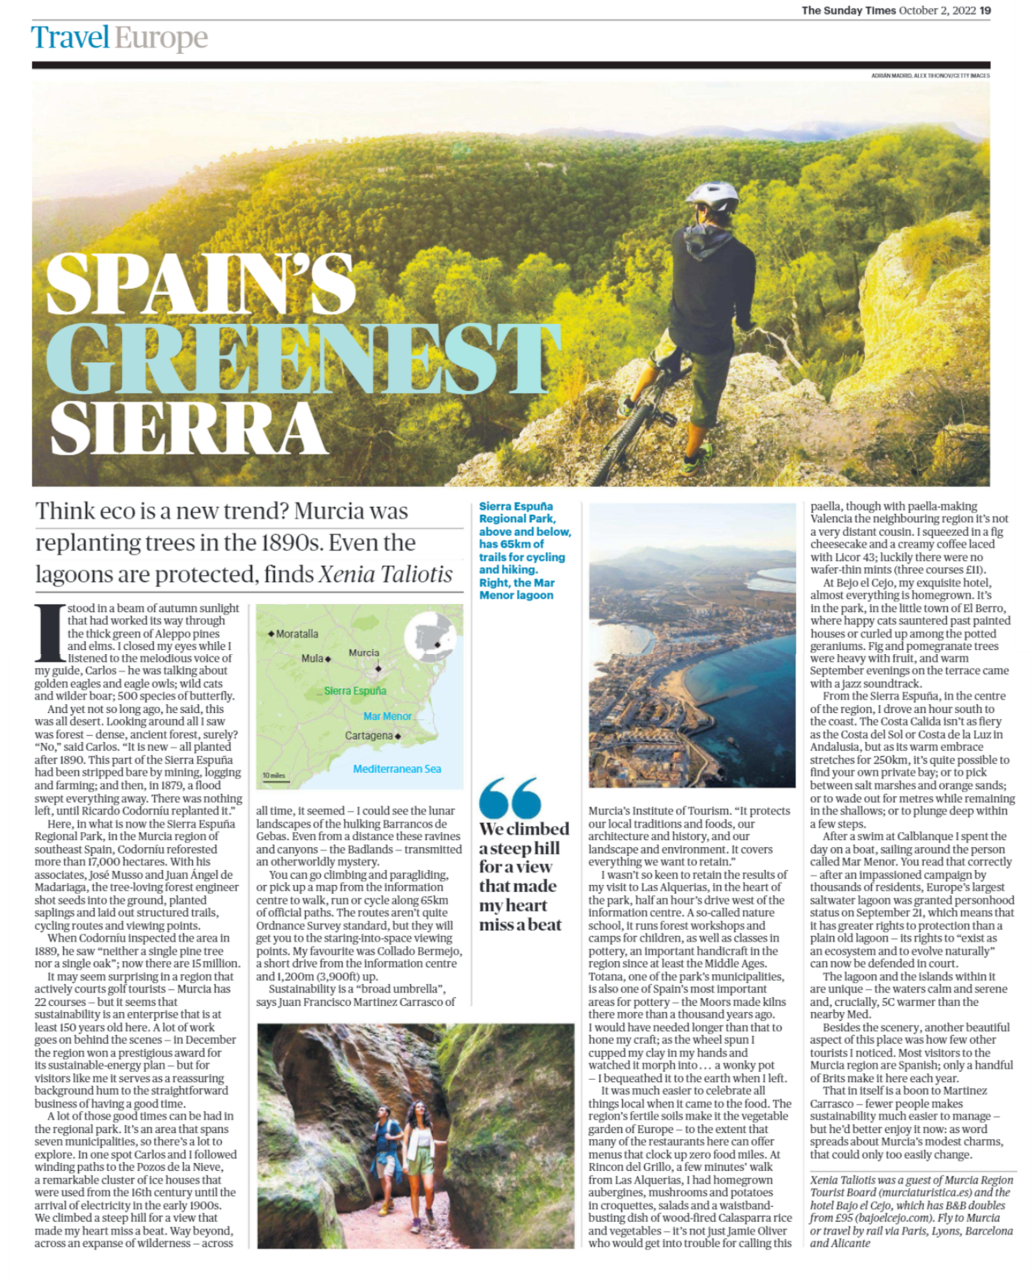 El reportaje publicado por The Sunday Times dedicado a la Región de Murcia y al Parque regional de Sierra Espuña puede alcanzar una difusión de más de 4,3 millones de usuarios